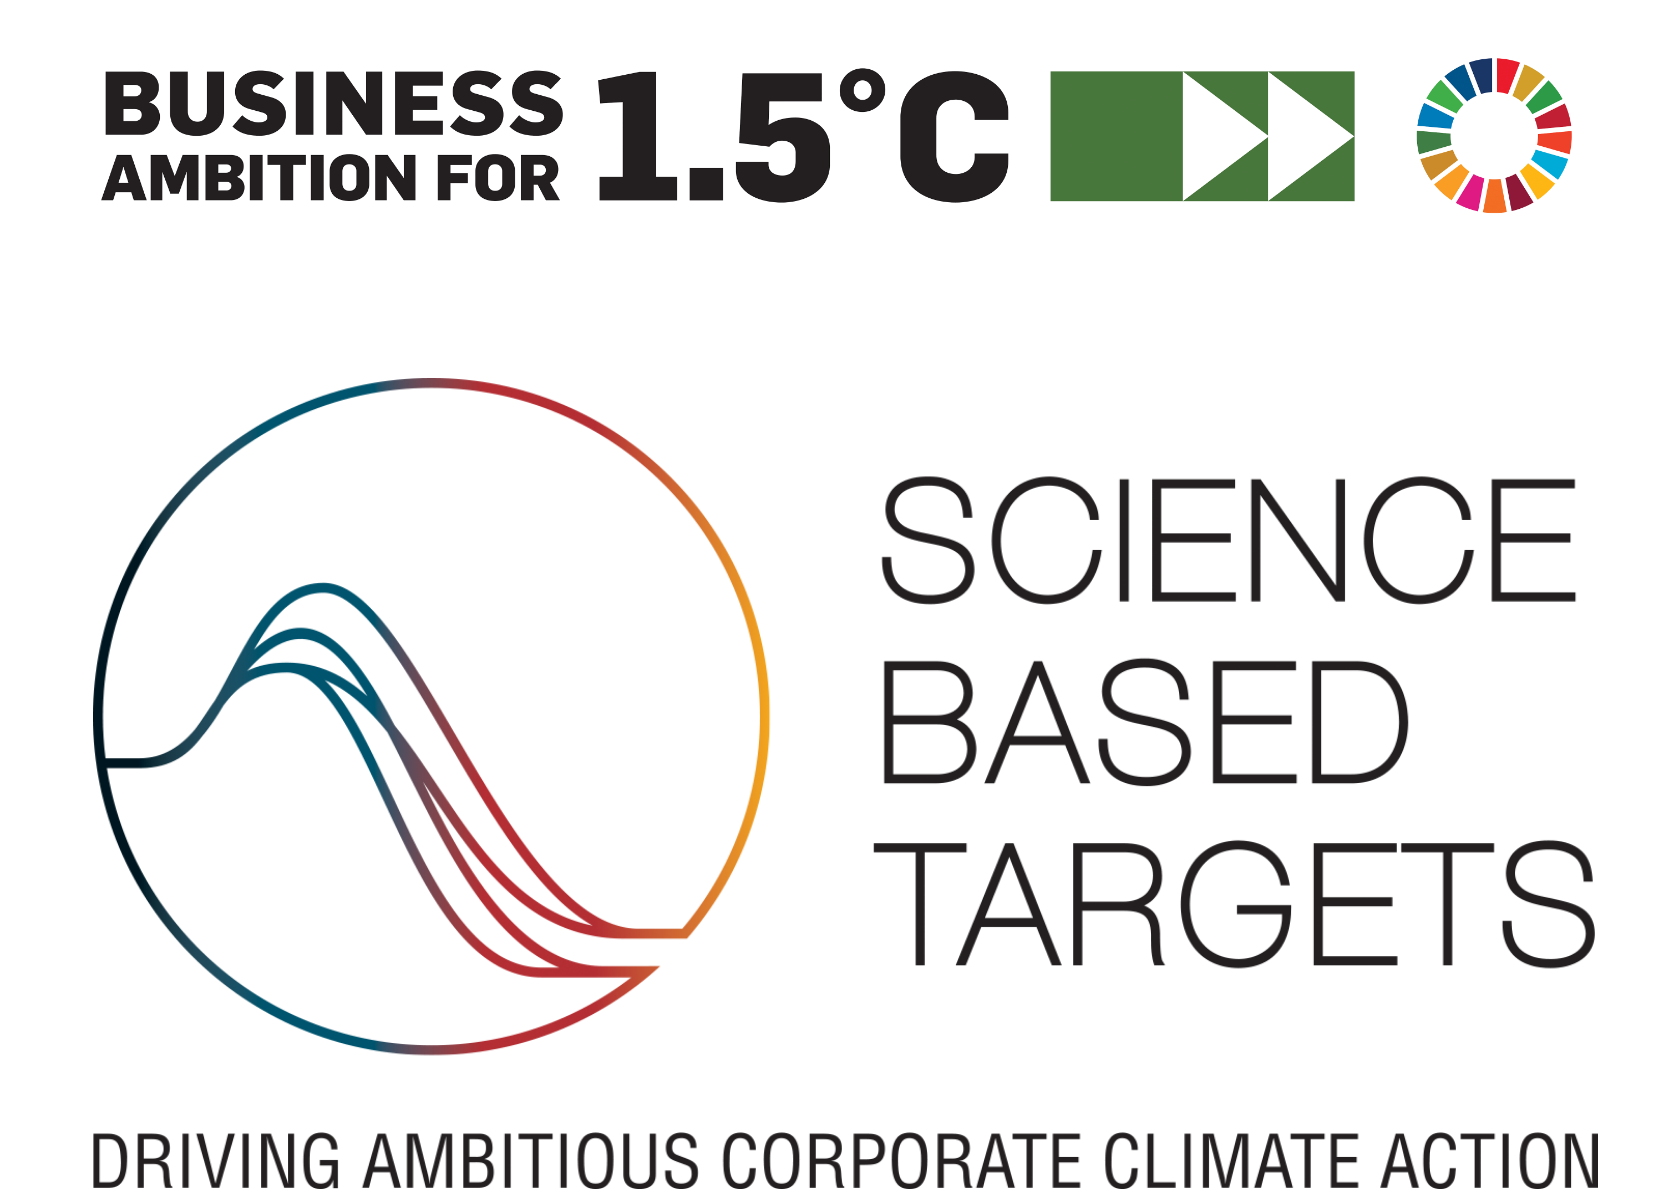 Logo Science Based Targets